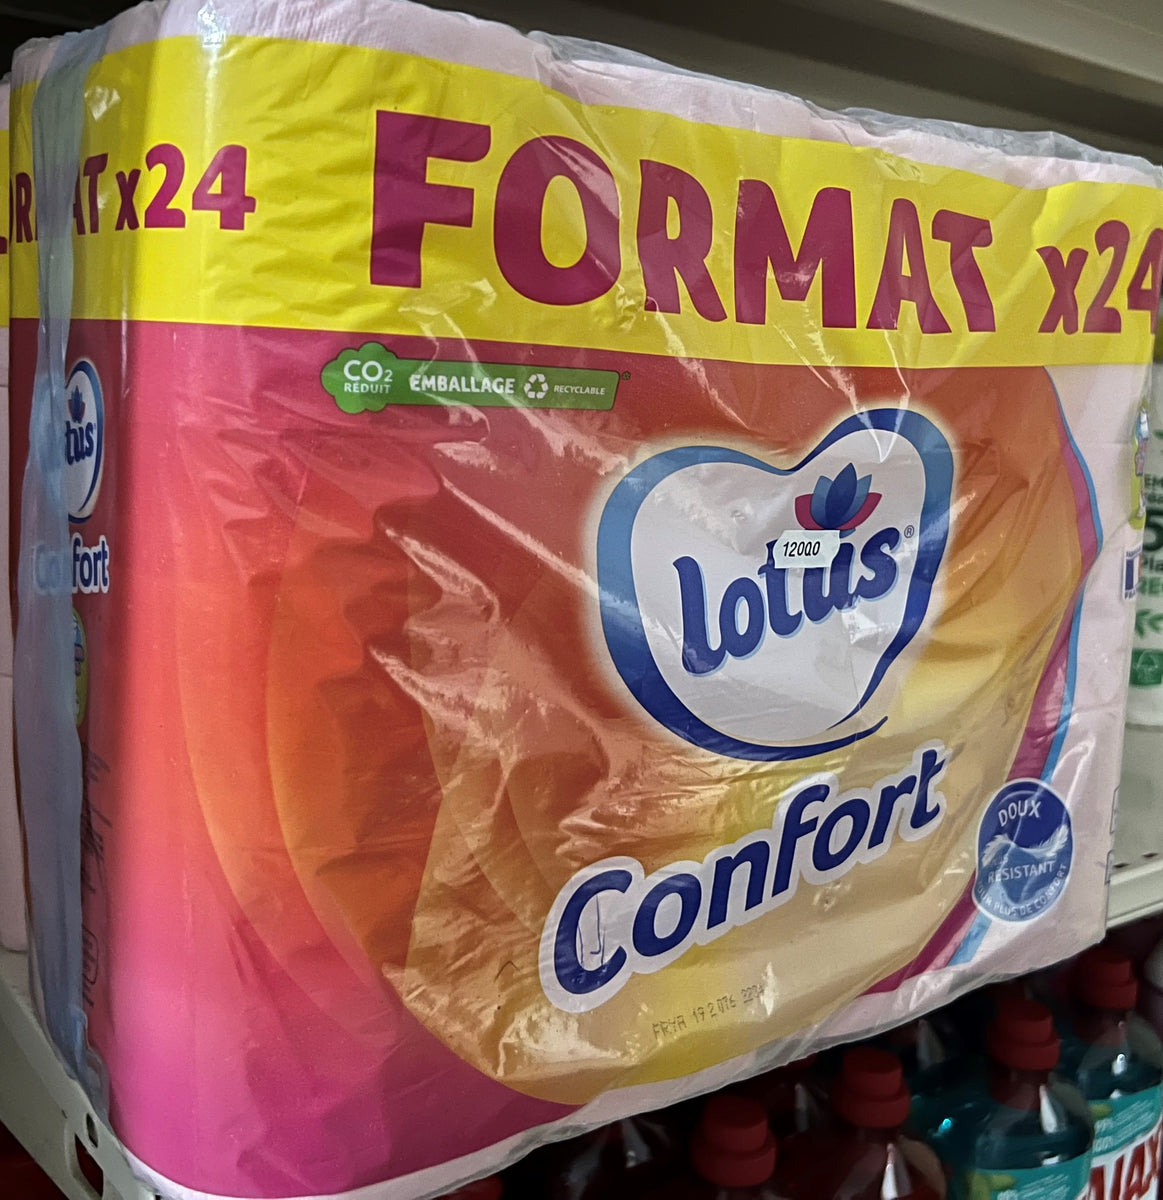 LOTUS confort papier toilette blanc 24 tubes – CotidienGab's